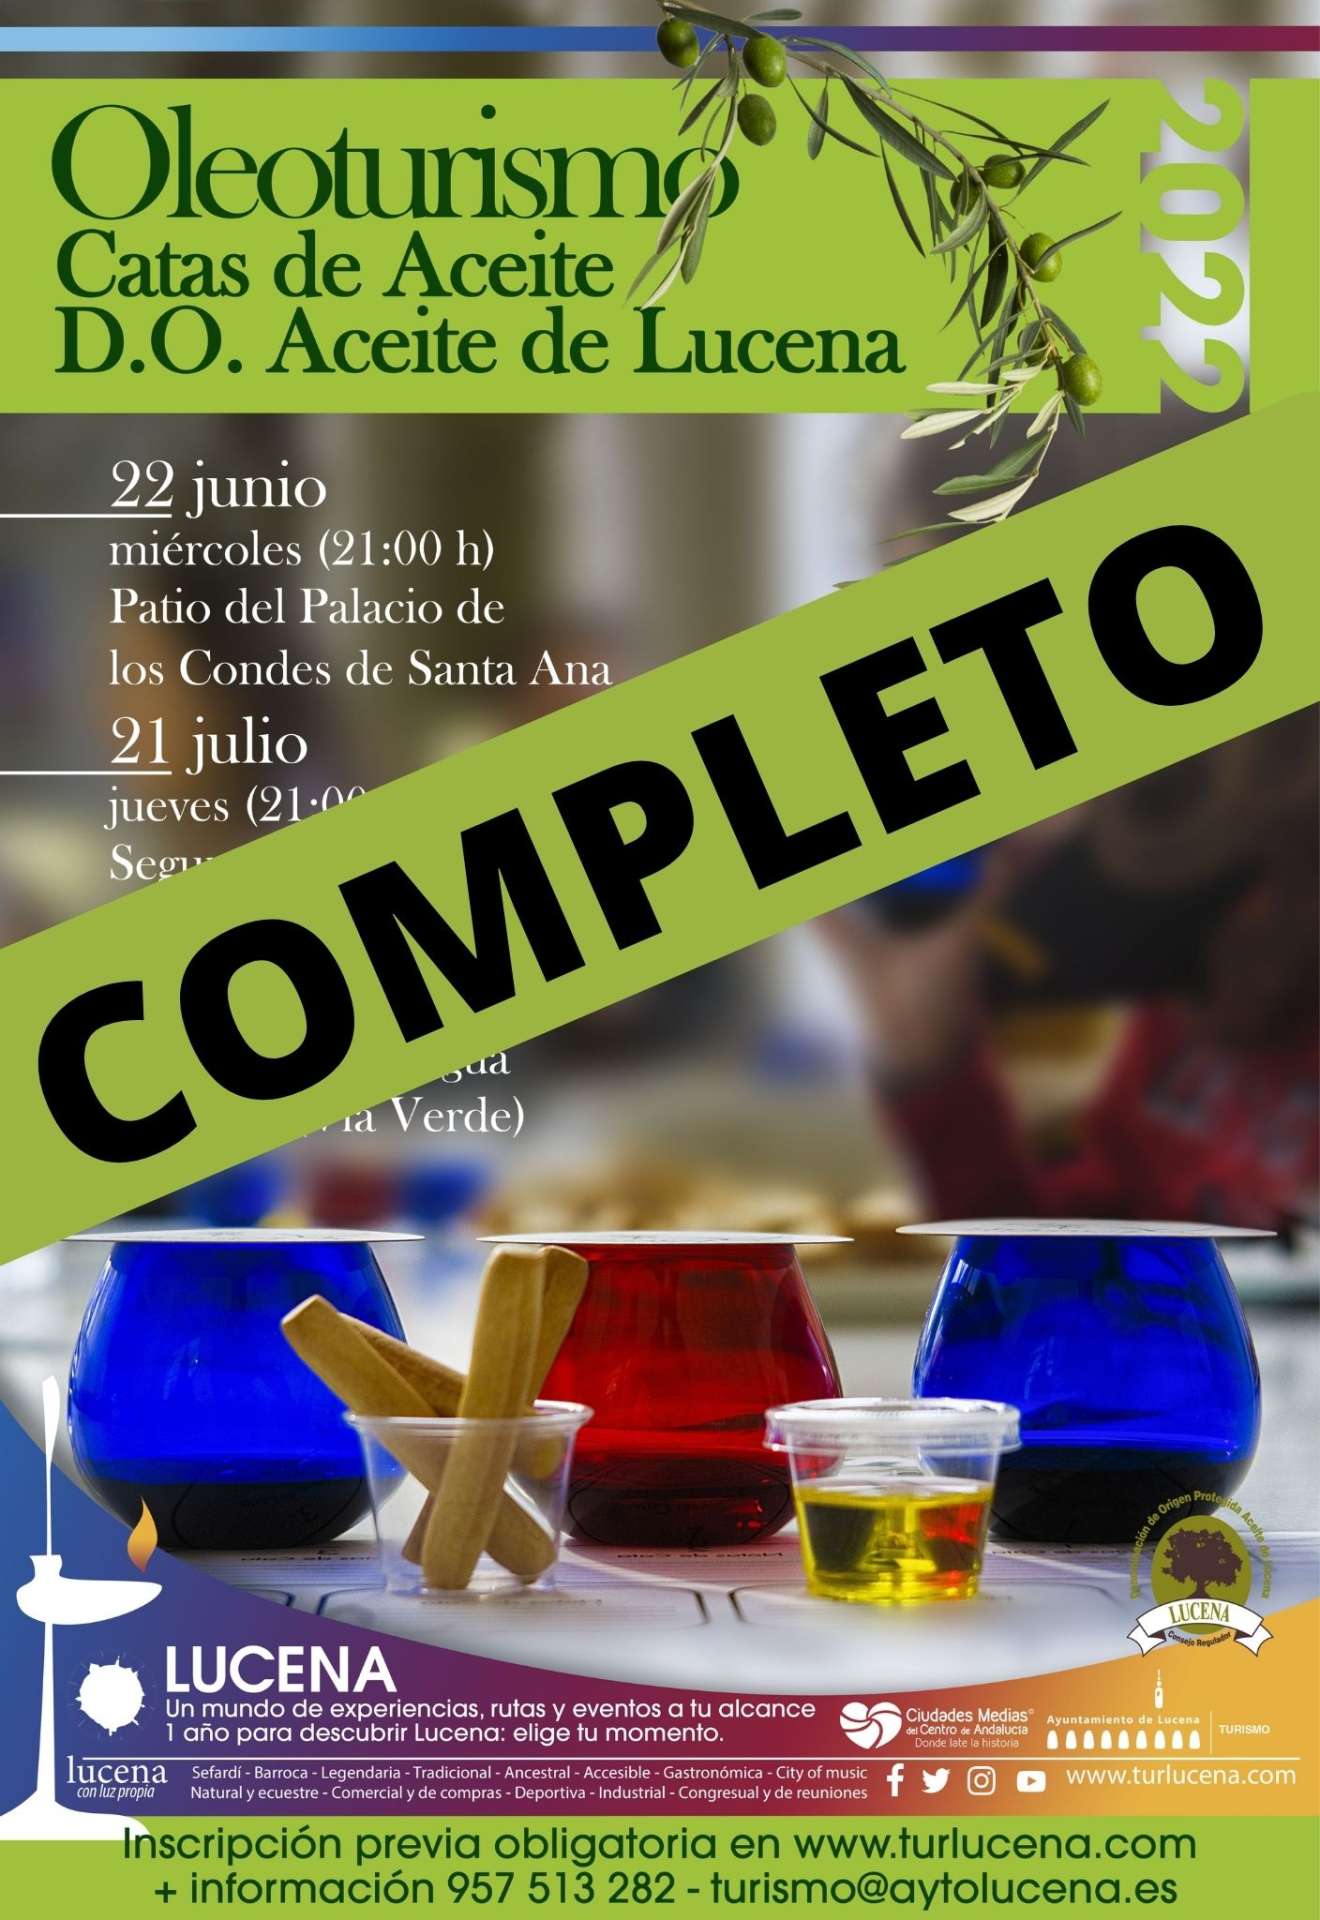 Cata de Aceites de Oliva virgen Extra, D.O.P. Aceites de Lucena 03 de agosto